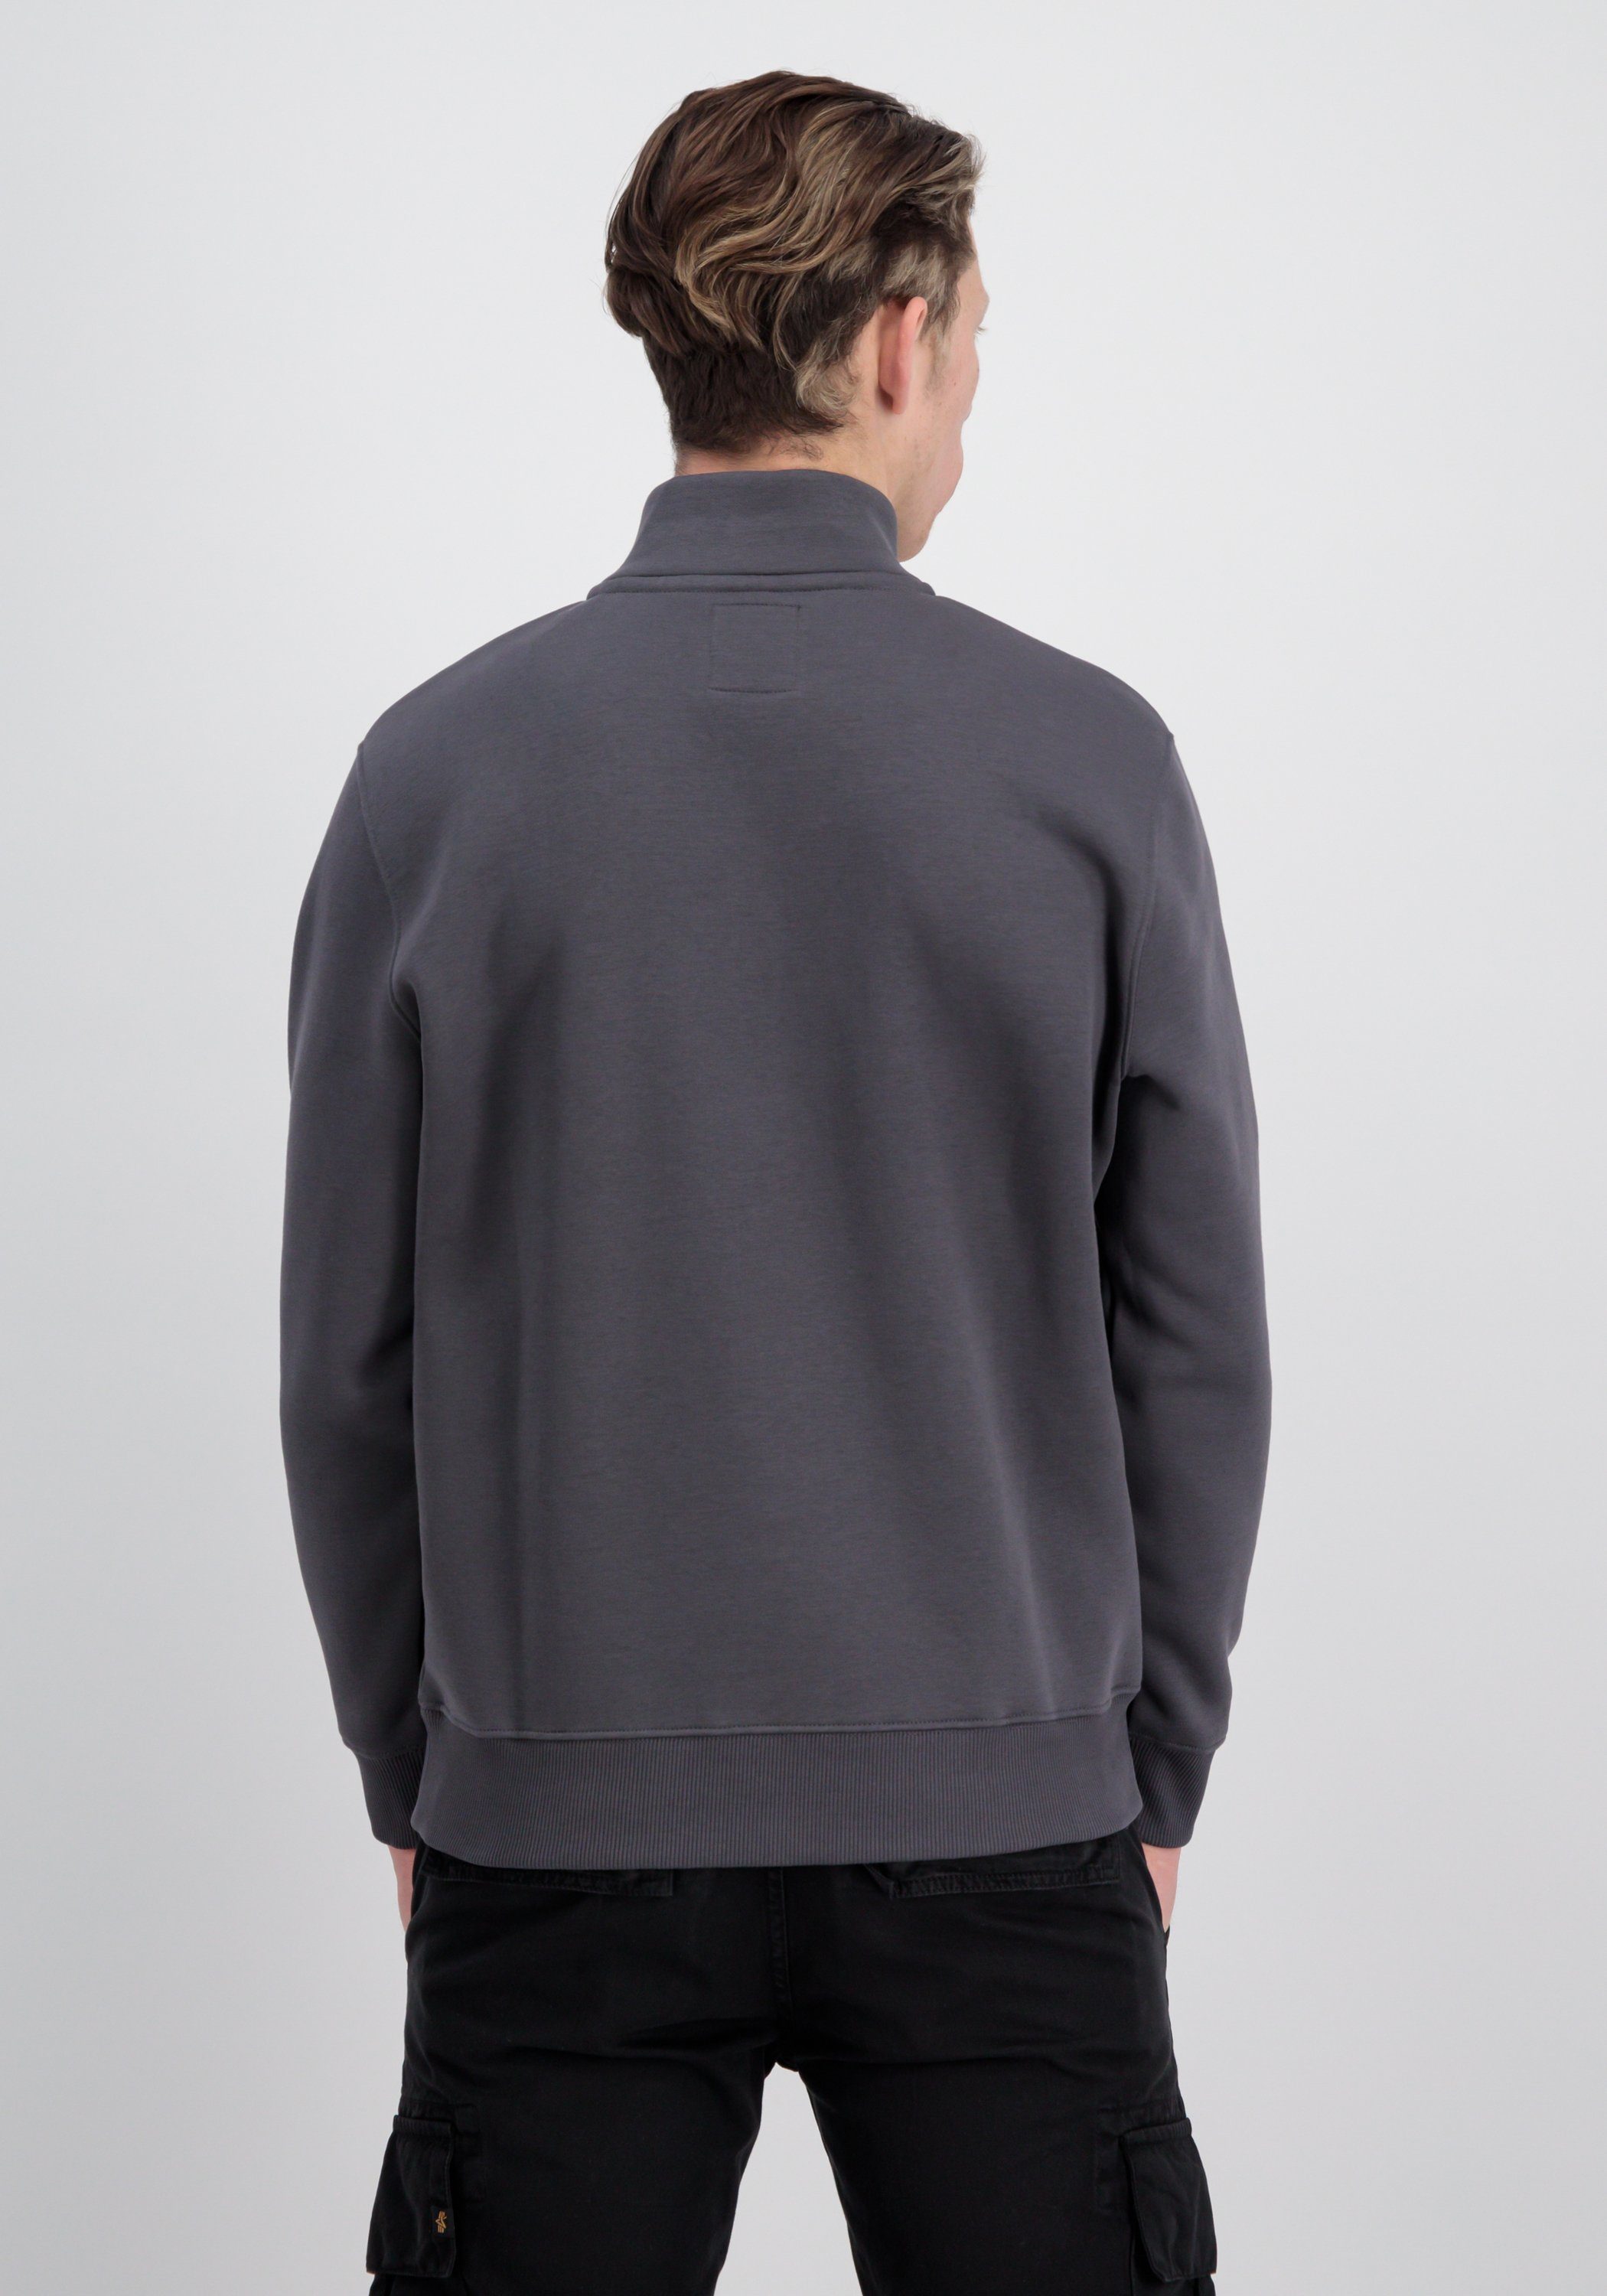 Zip Alpha - Sweater Sweater Half vintage Men grey Industries SL Industries Sweatshirts Alpha